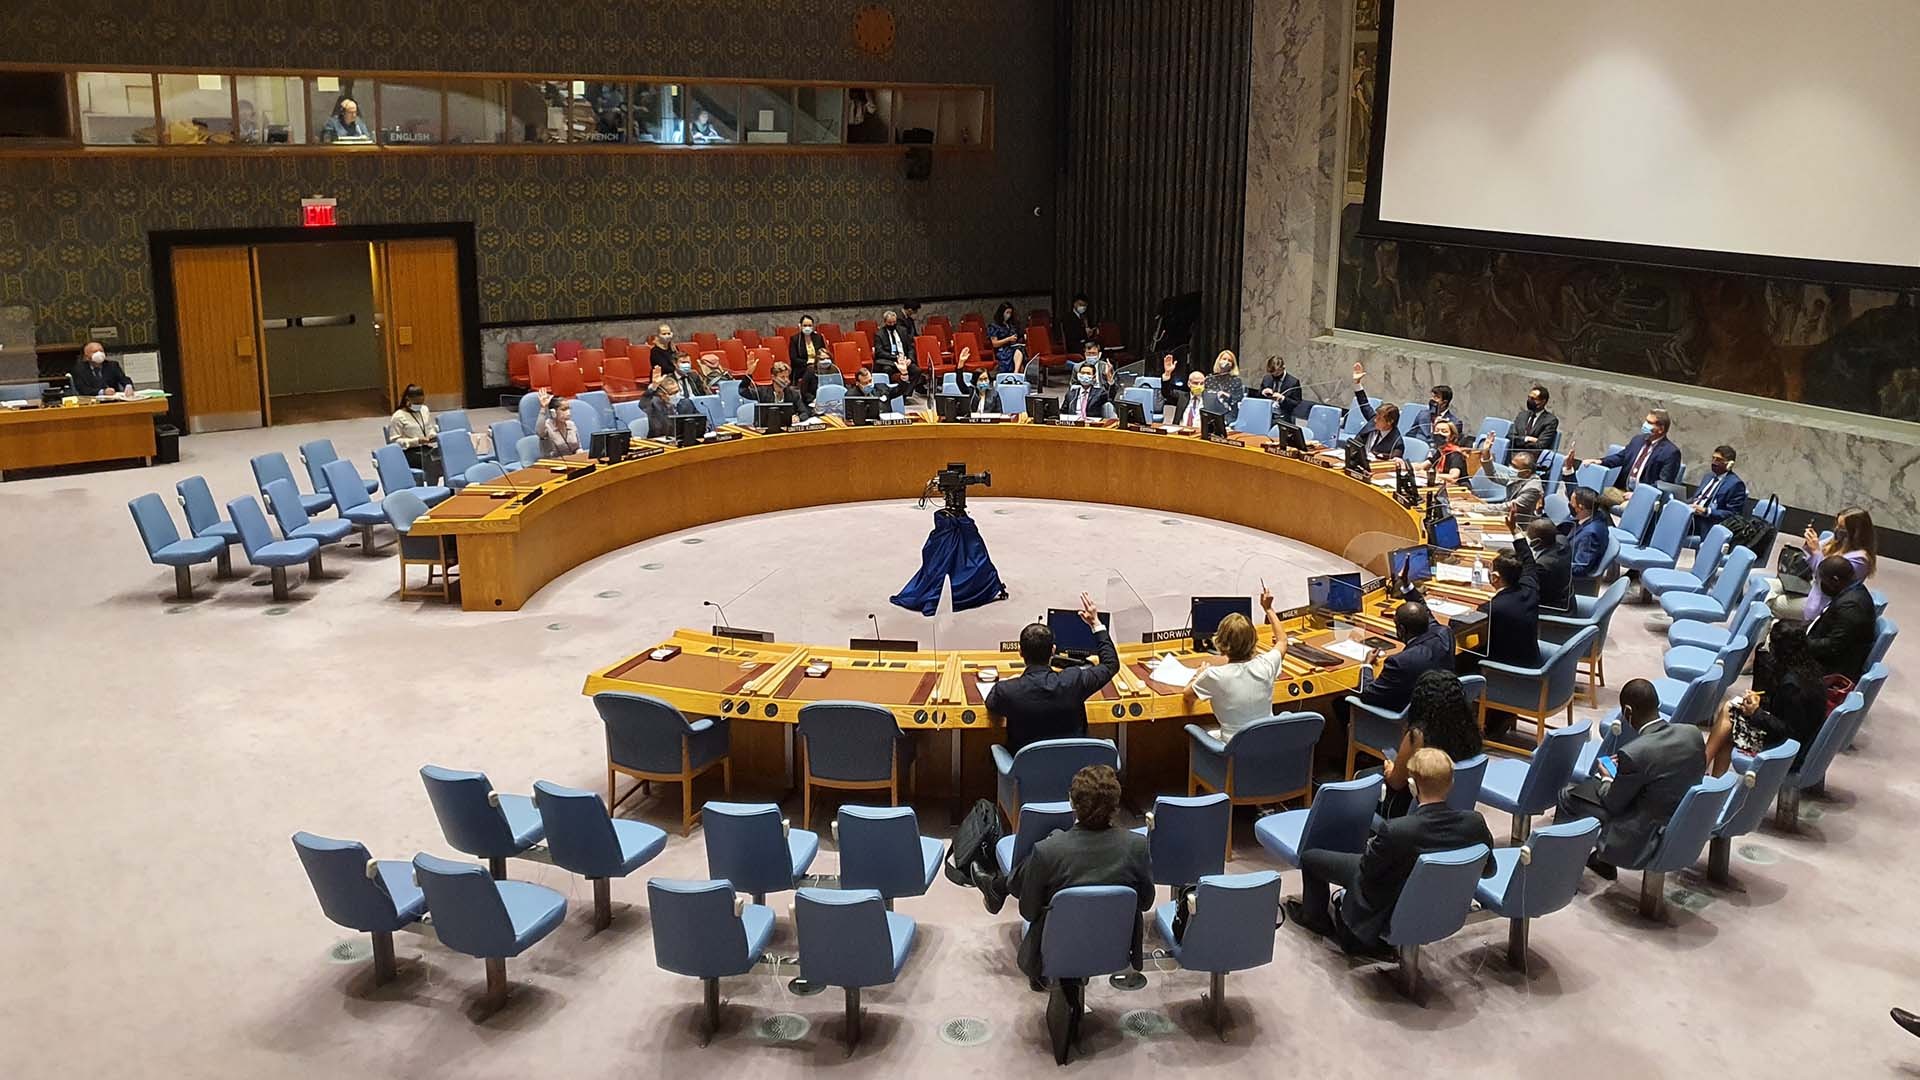 Hội đồng Bảo an Liên hợp quốc đã nhất trí thông qua Nghị quyết số 2586 về việc gia hạn hoạt động của Phái bộ LHQ tại thành phố Hodeidah của Yemen thêm 12 tháng.